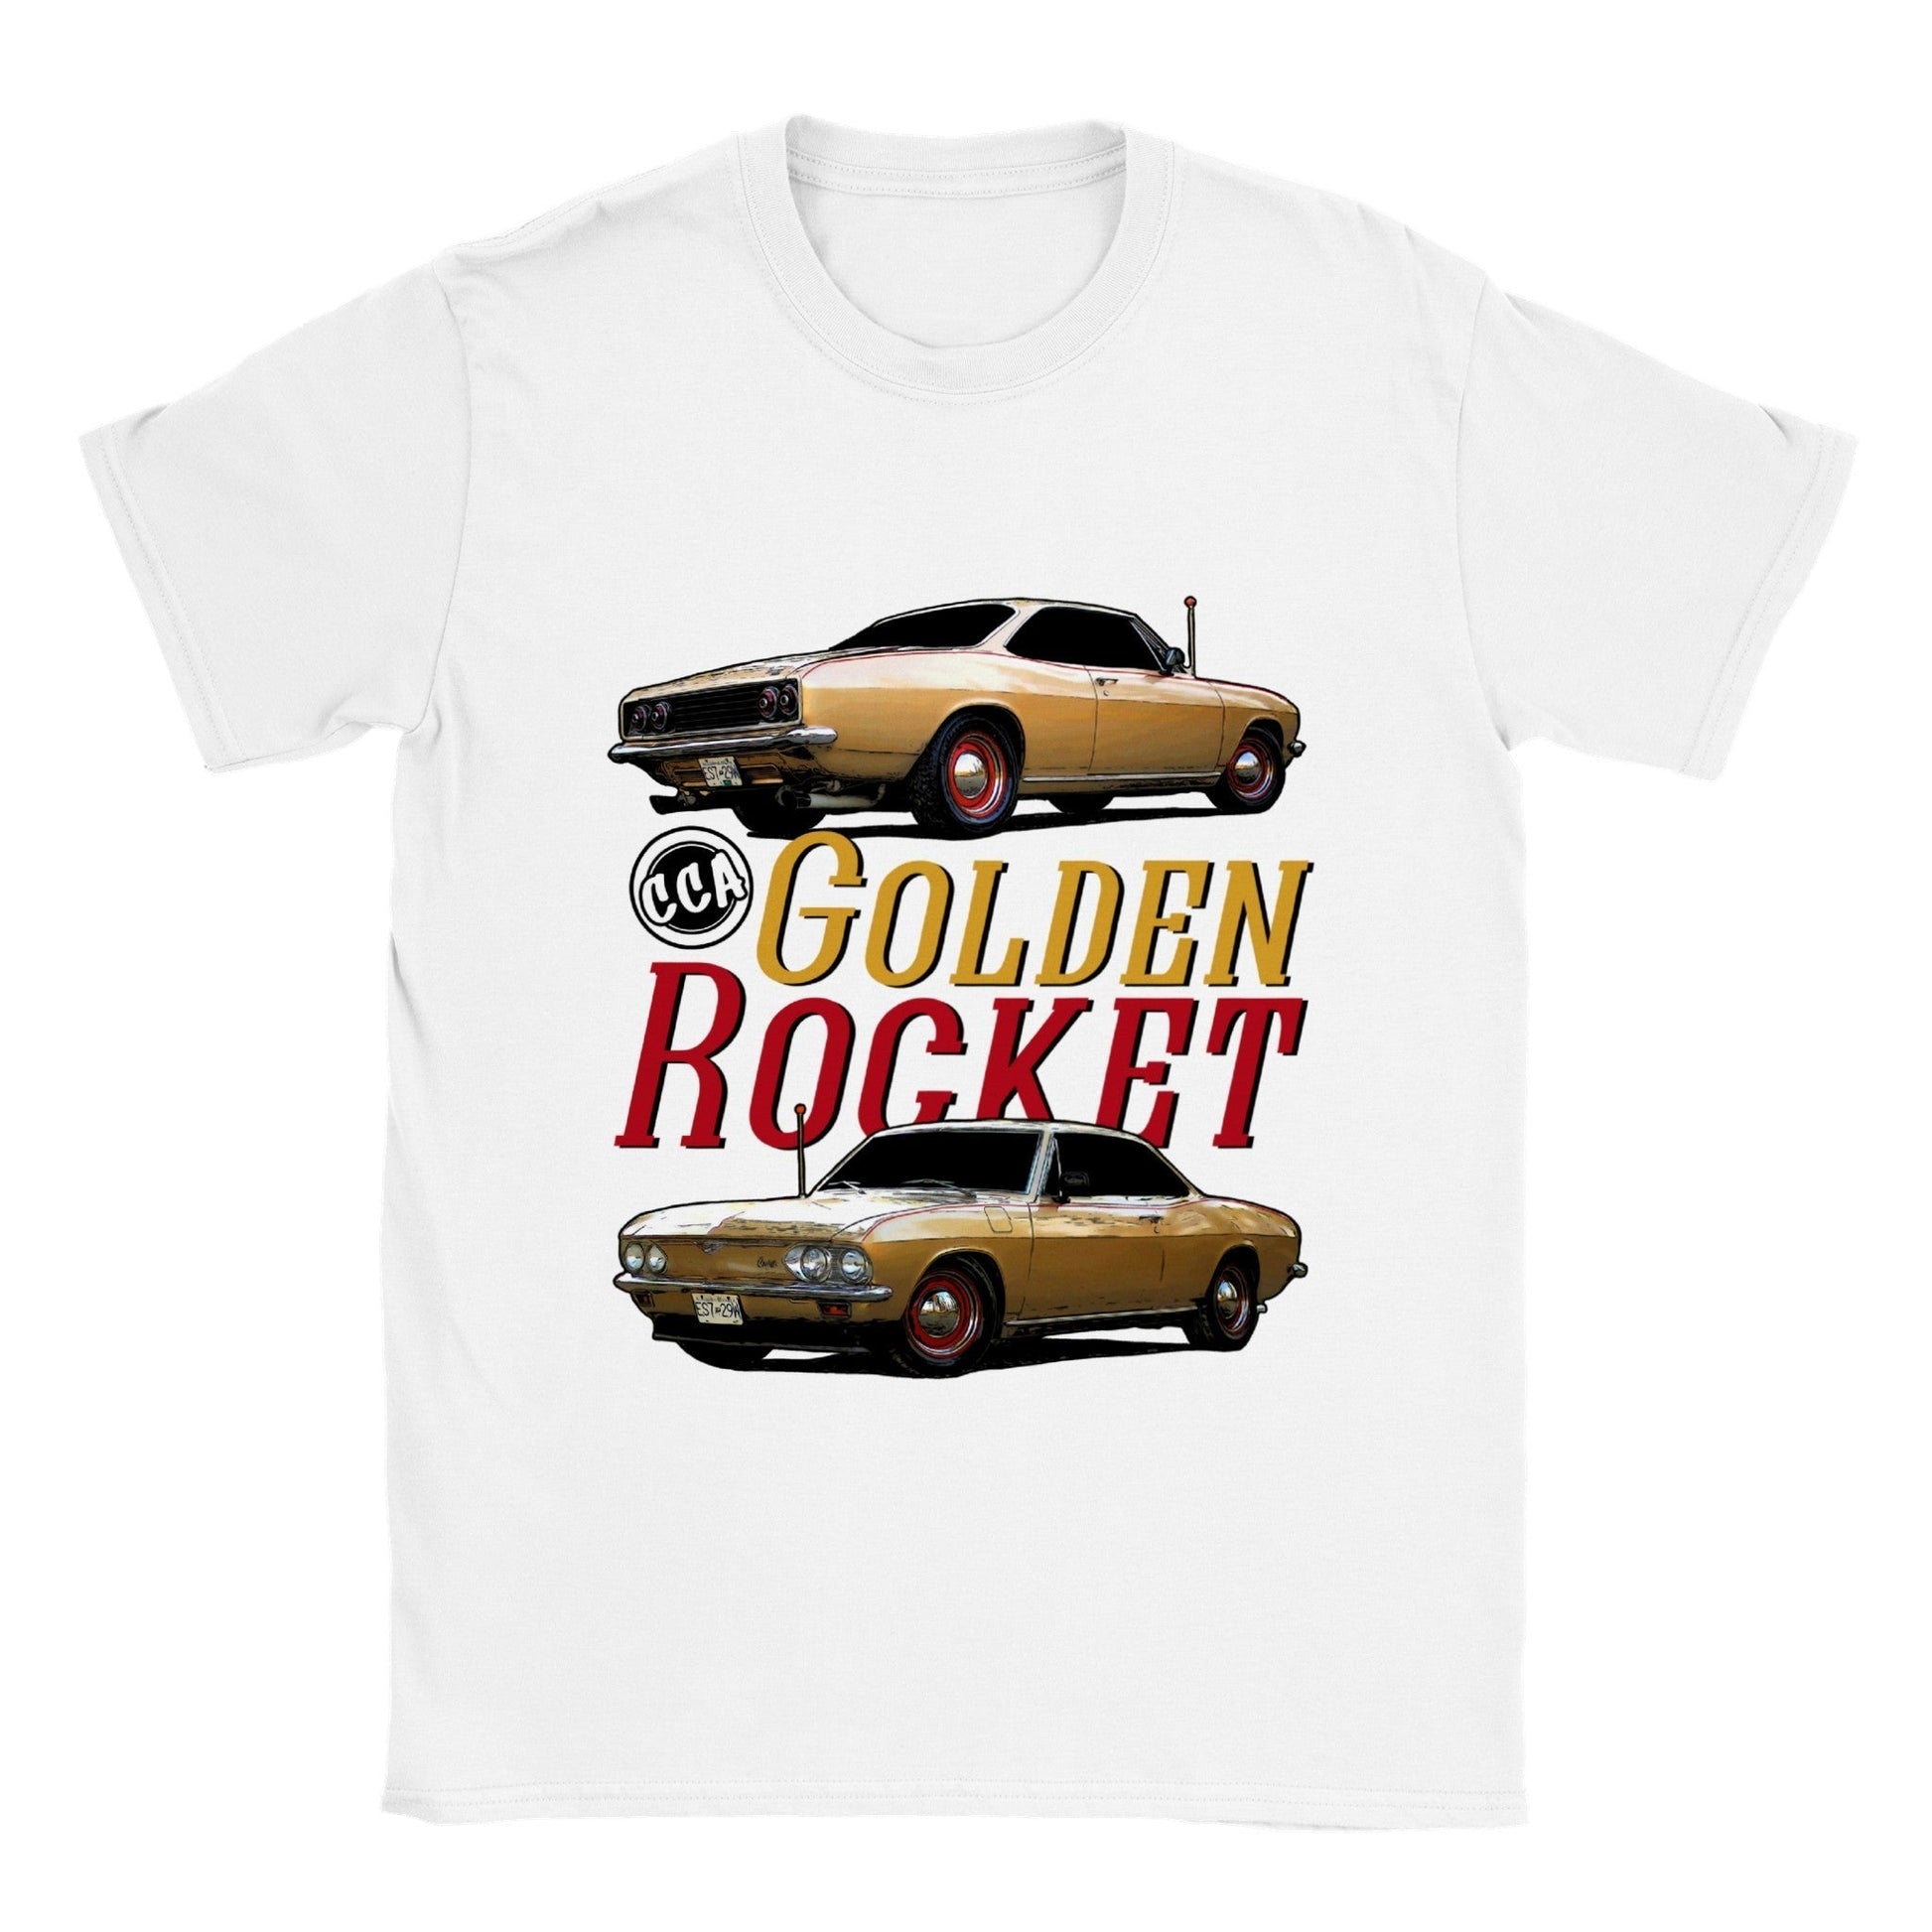 Print Material - Golden Rocket T-shirt